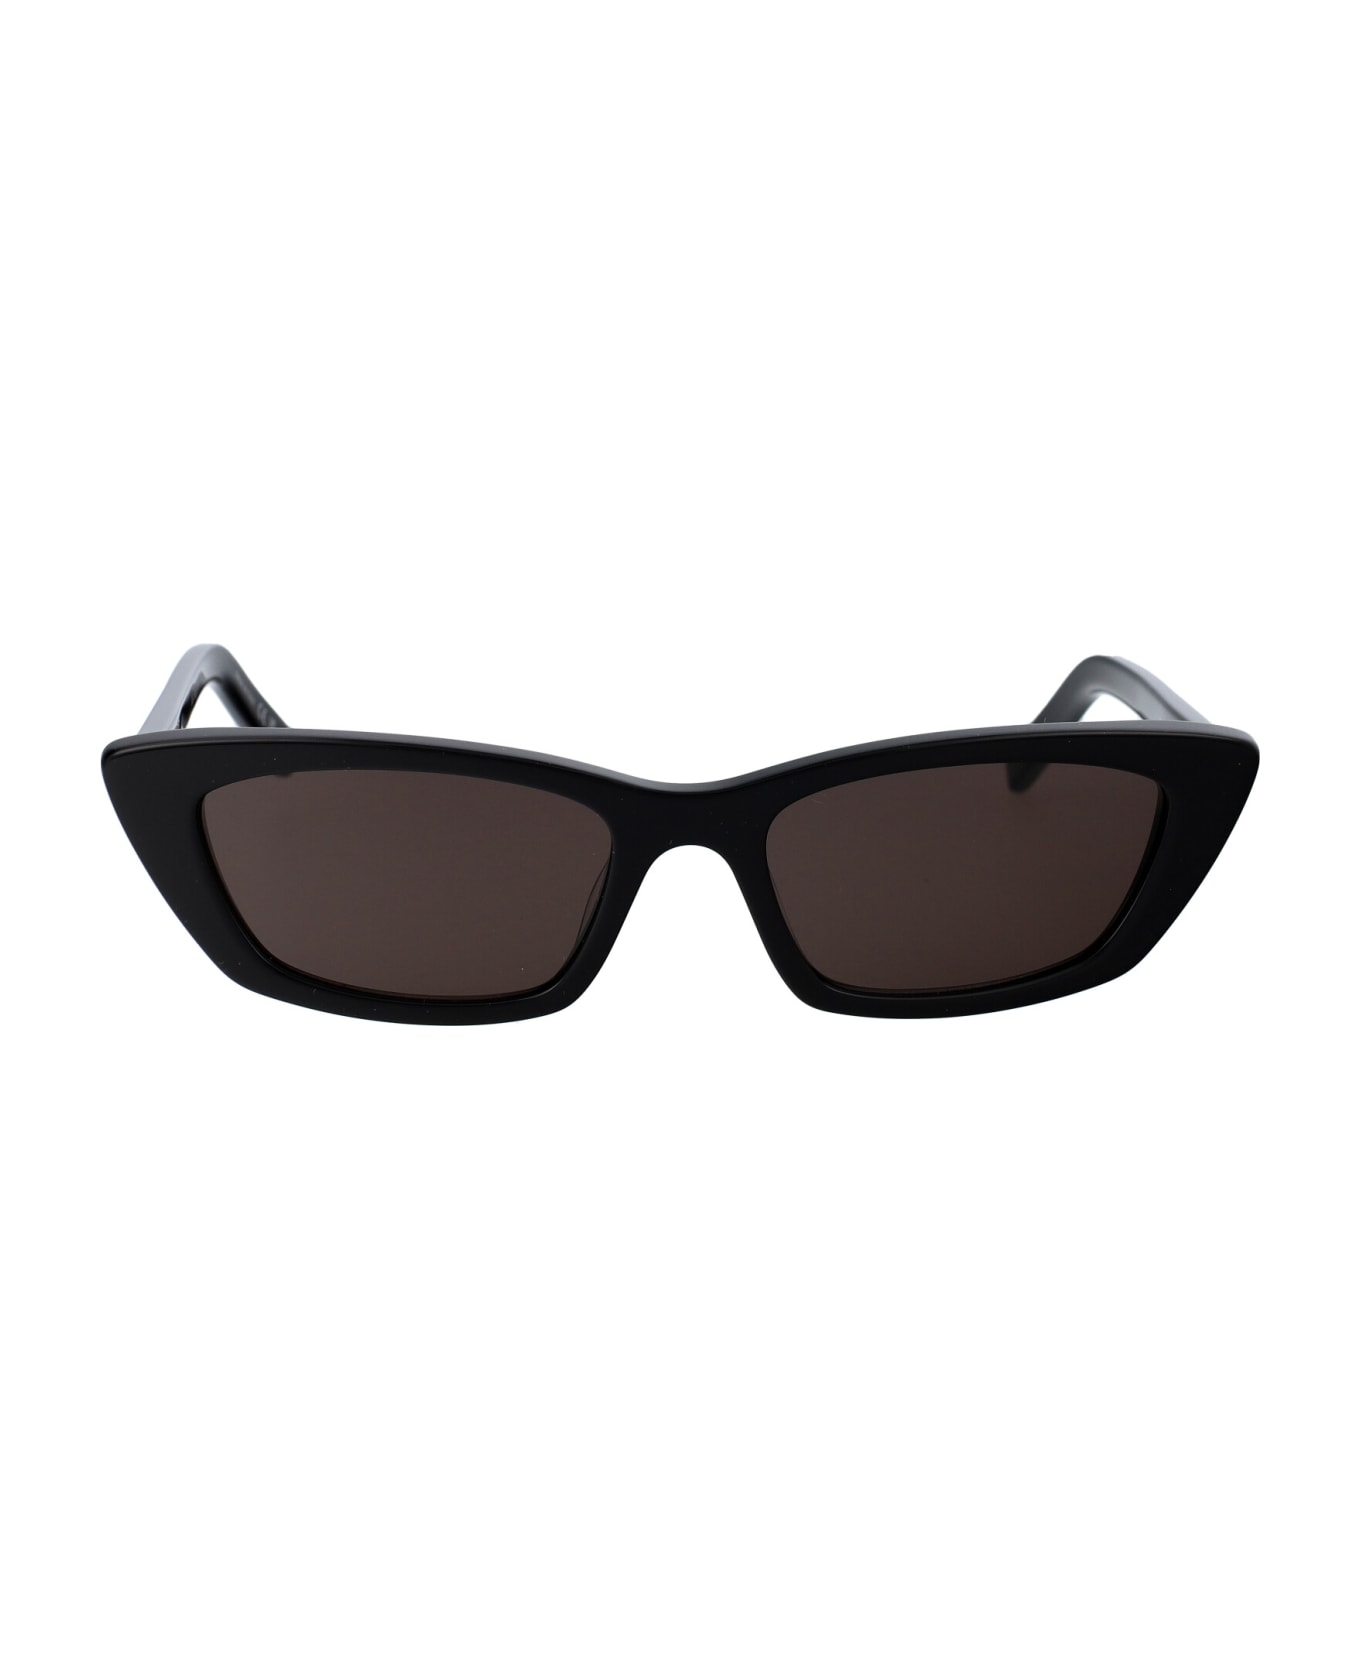 Saint Laurent Eyewear Sl 277 Sunglasses - 009 BLACK BLACK BLACK